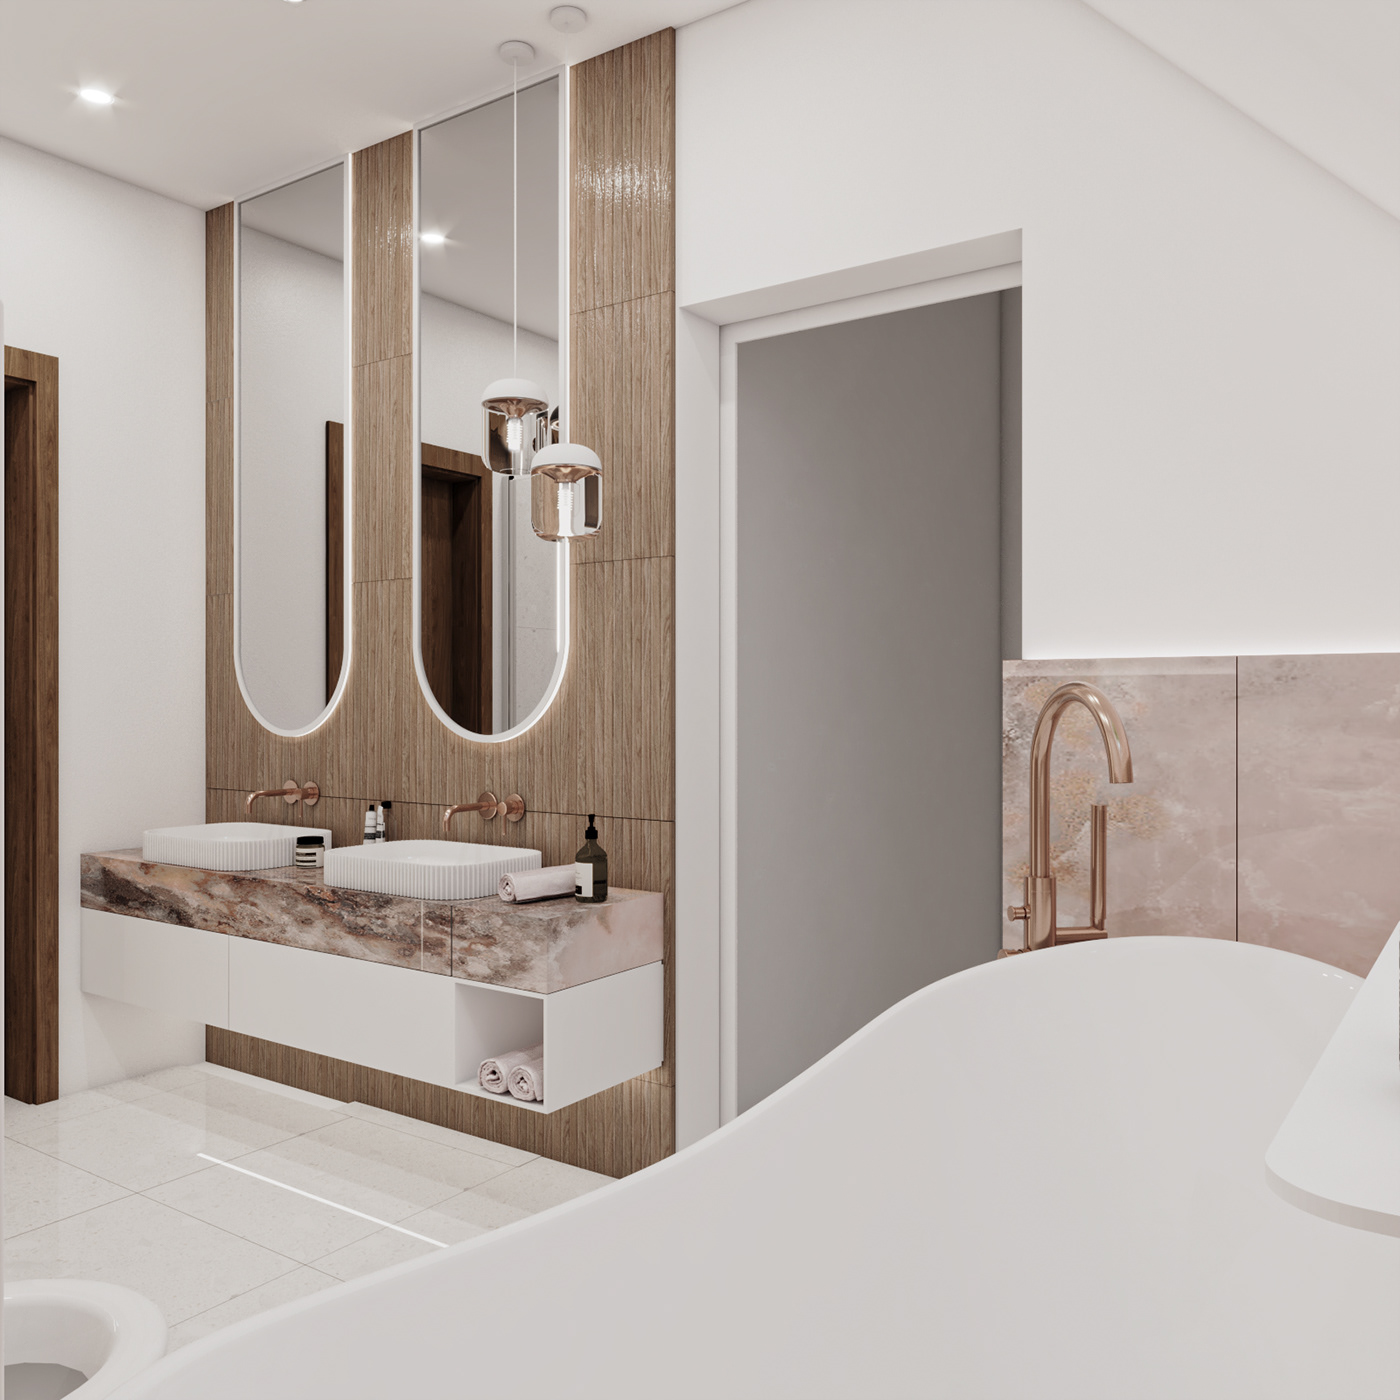 bathroom bathroom design Render vray visualization 3D copper tiles